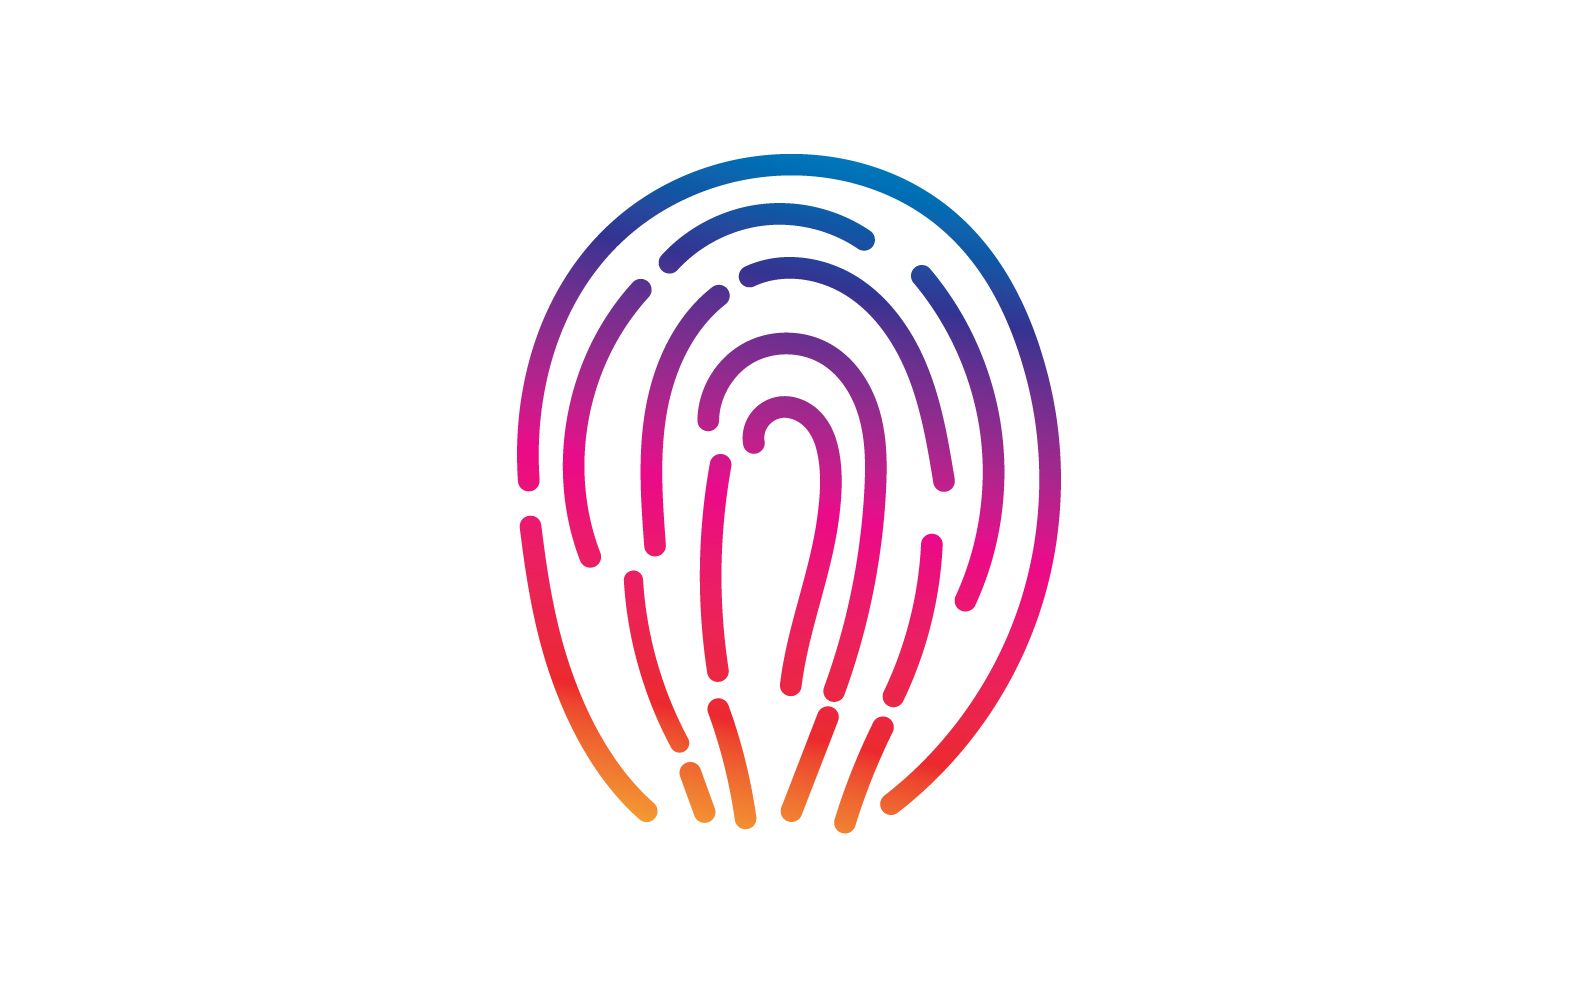 Fingerprint security system logo v1